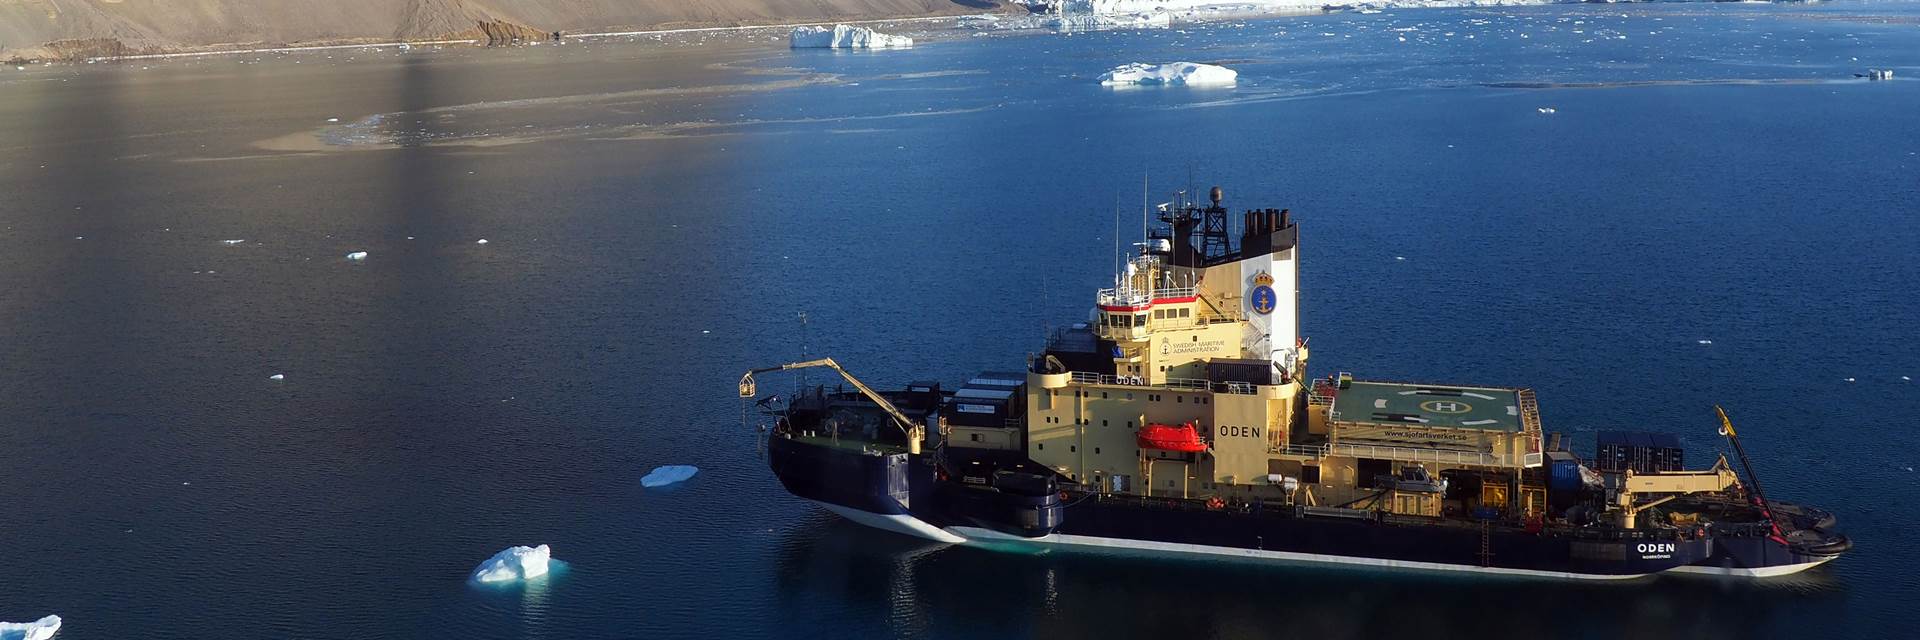 Forskningsisbrytaren Oden på expedition till Ryderglaciären i nordvästra Grönland